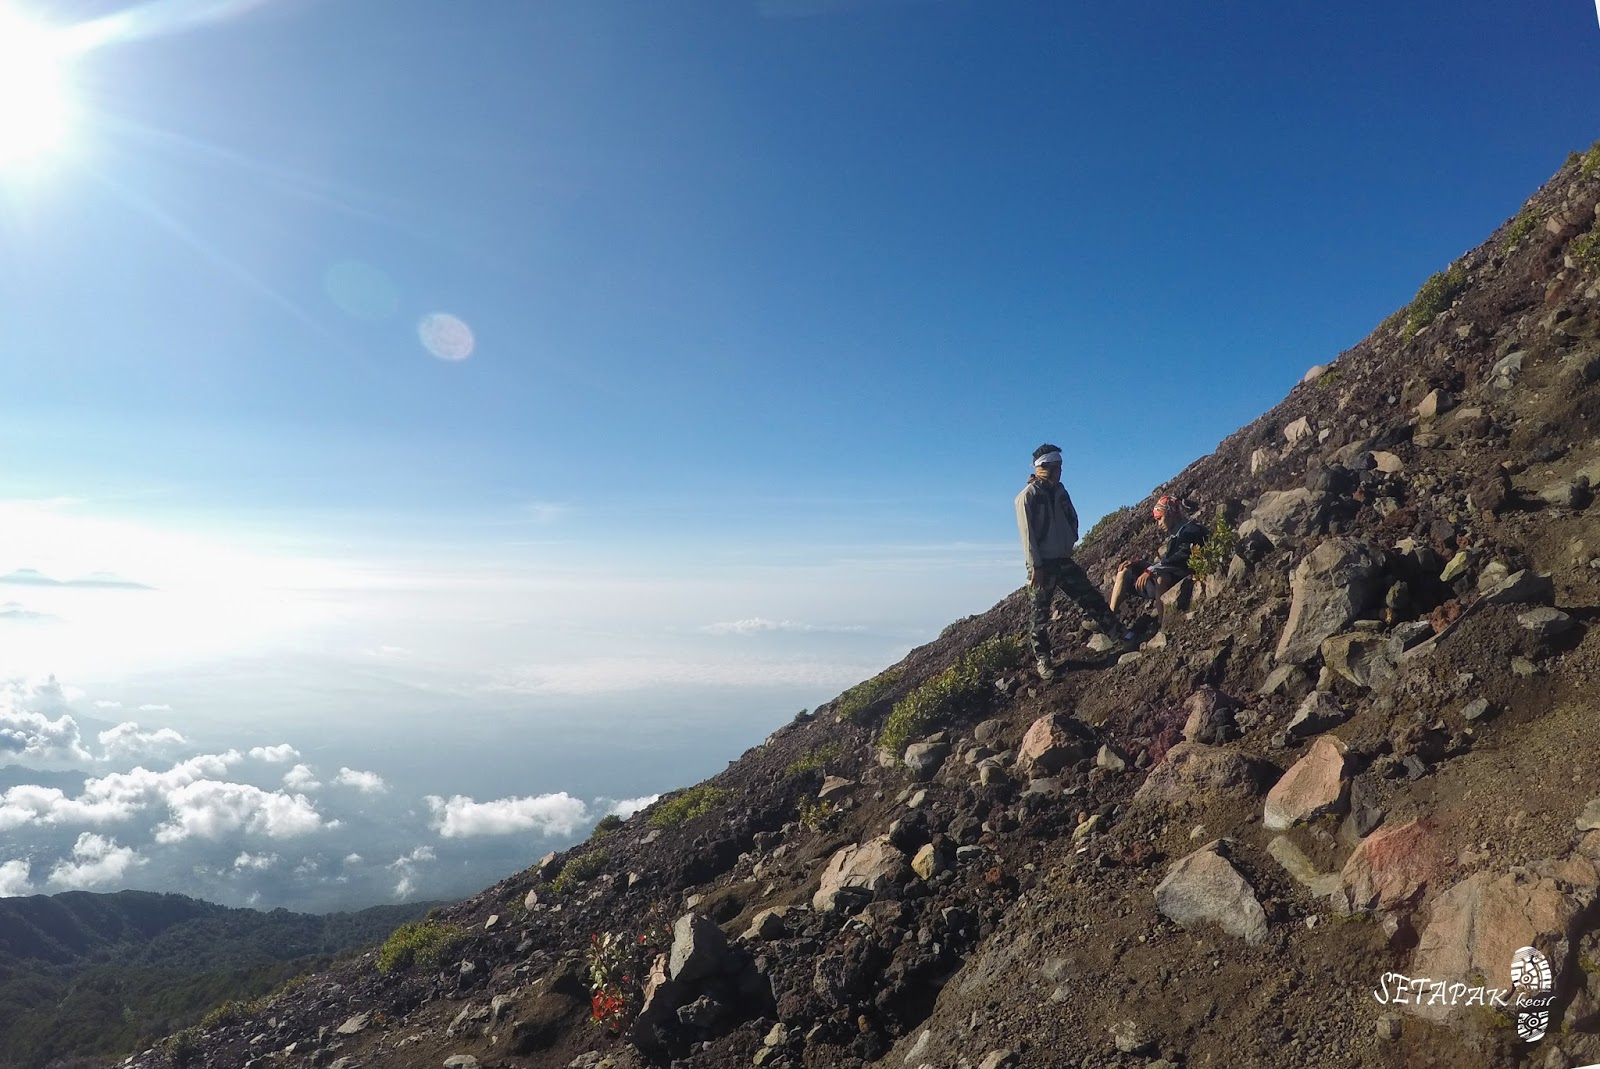 SETAPAK KECIL: Gunung Slamet - Atap Jawa Tengah [Cerita 